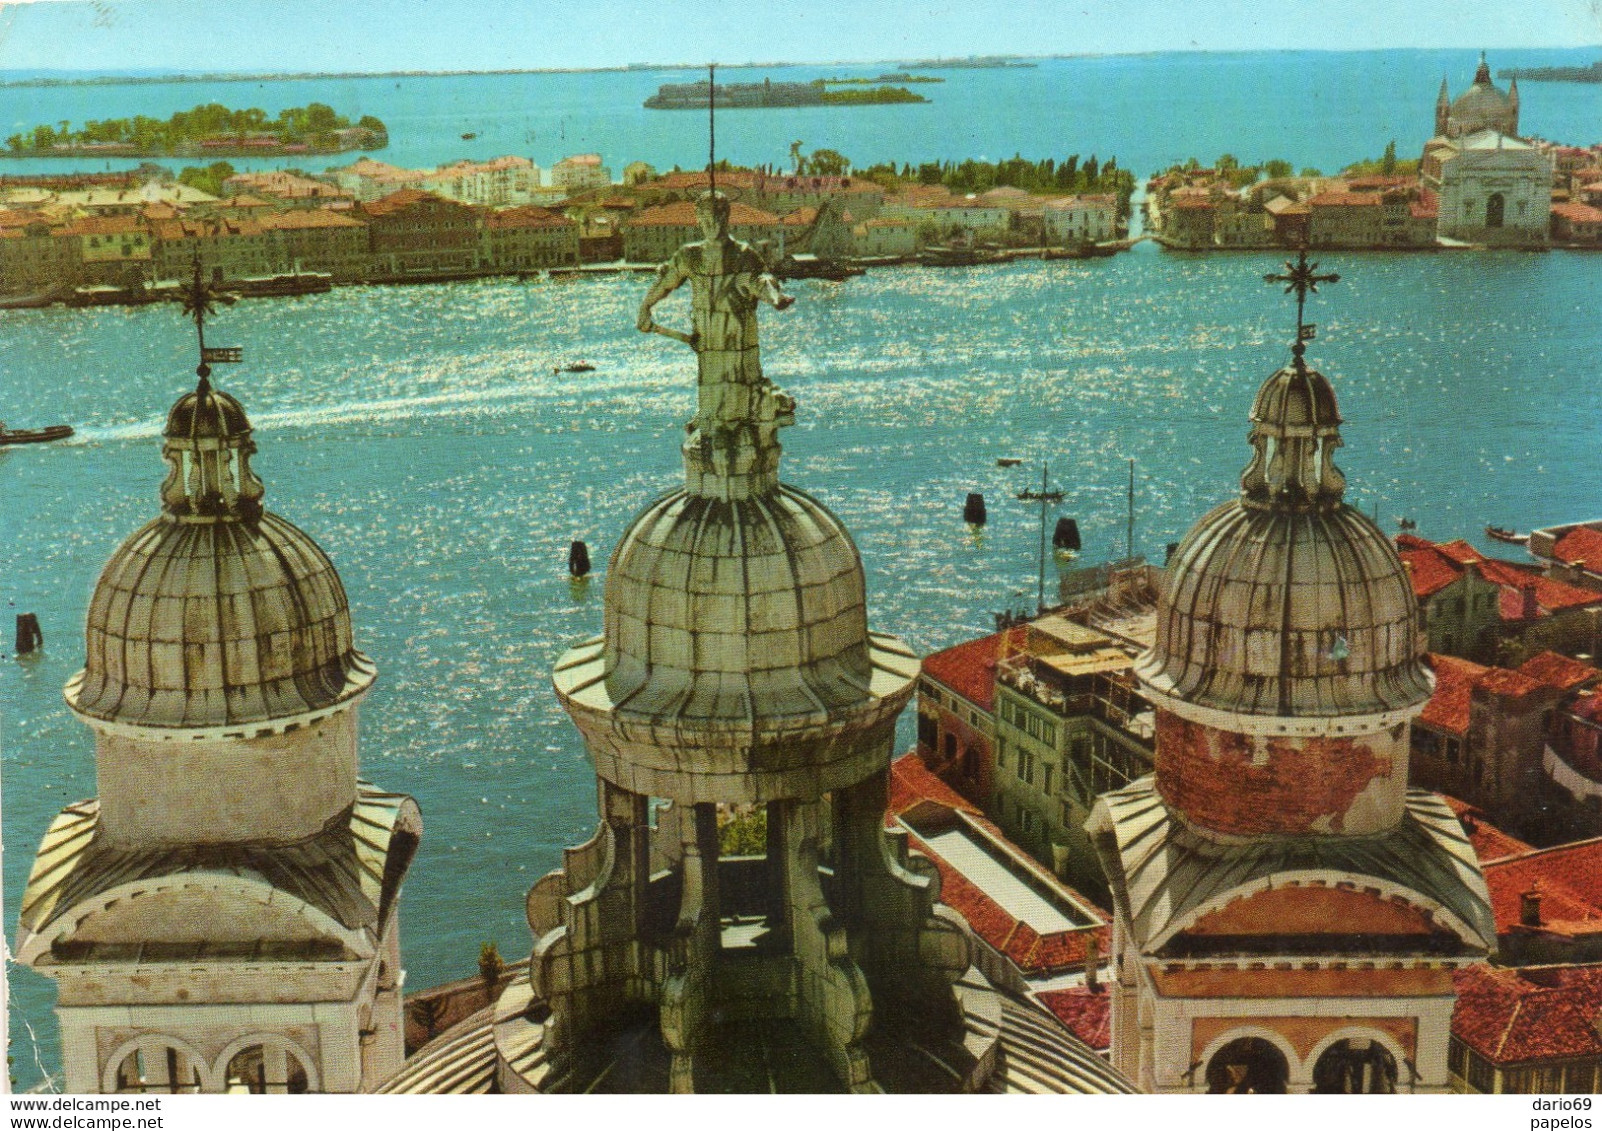 1962  CARTOLINA  VENEZIA - Venezia